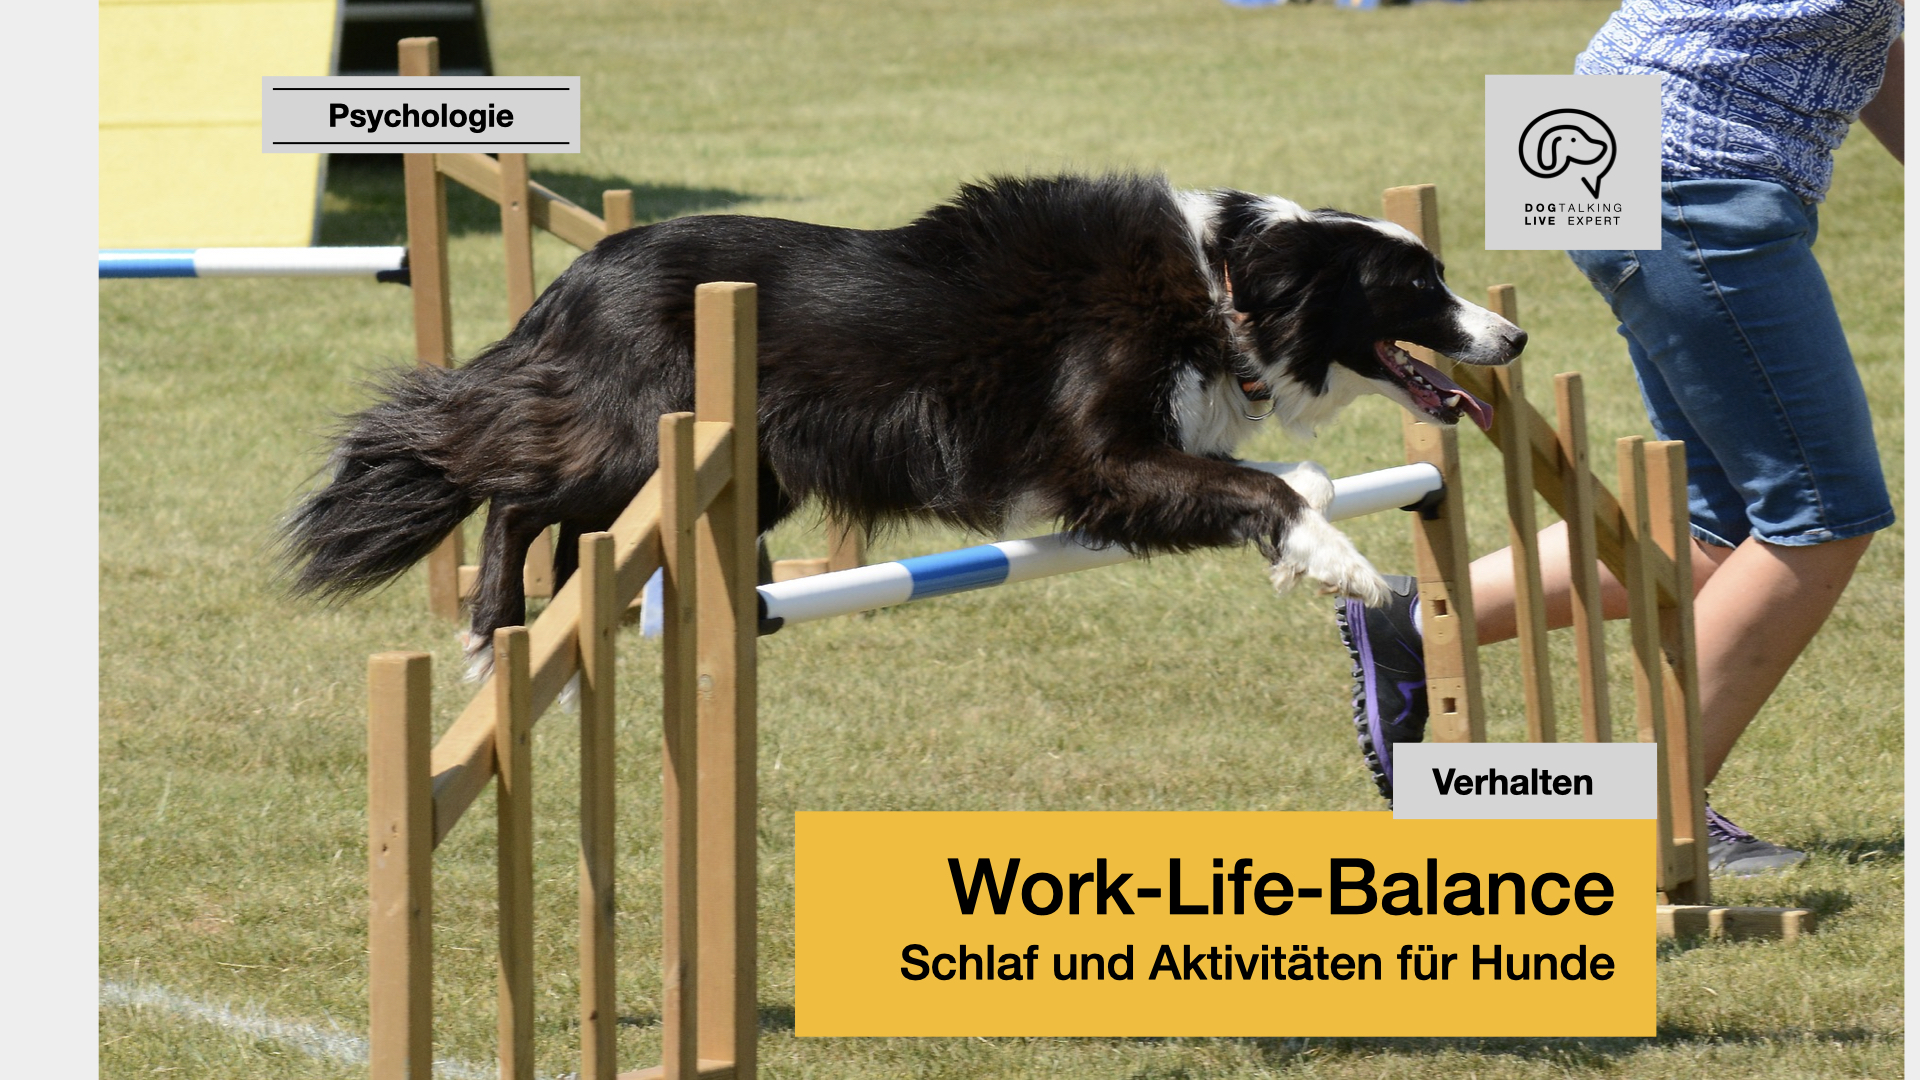 Work-Life-Balance Schlaf und Aktivitäten für Hunde